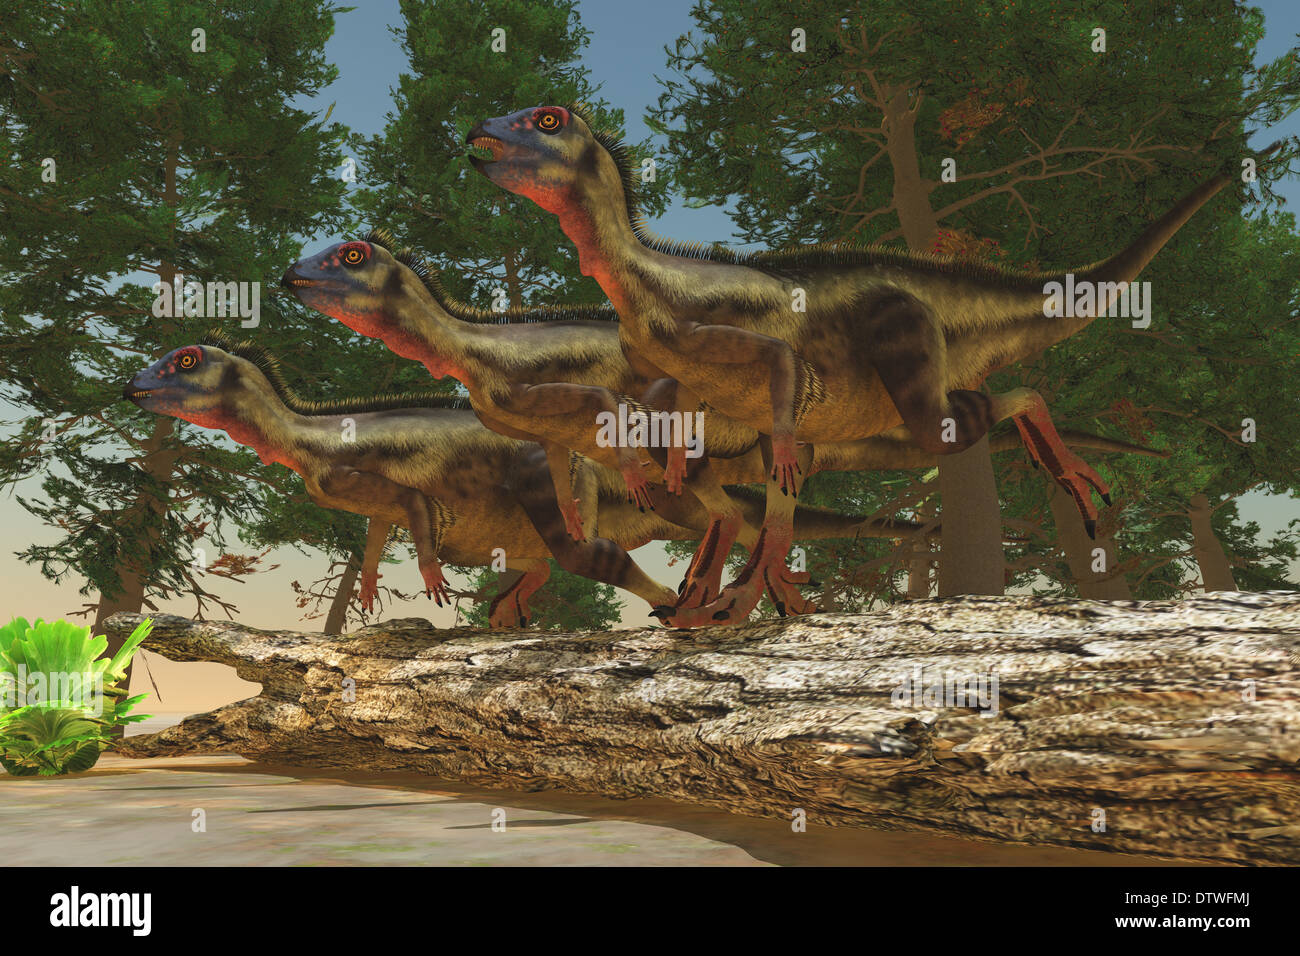 Hypsilophodon war ein pflanzenfressender Dinosaurier aus der Jura- und Kreidezeit Epochen. Stockfoto